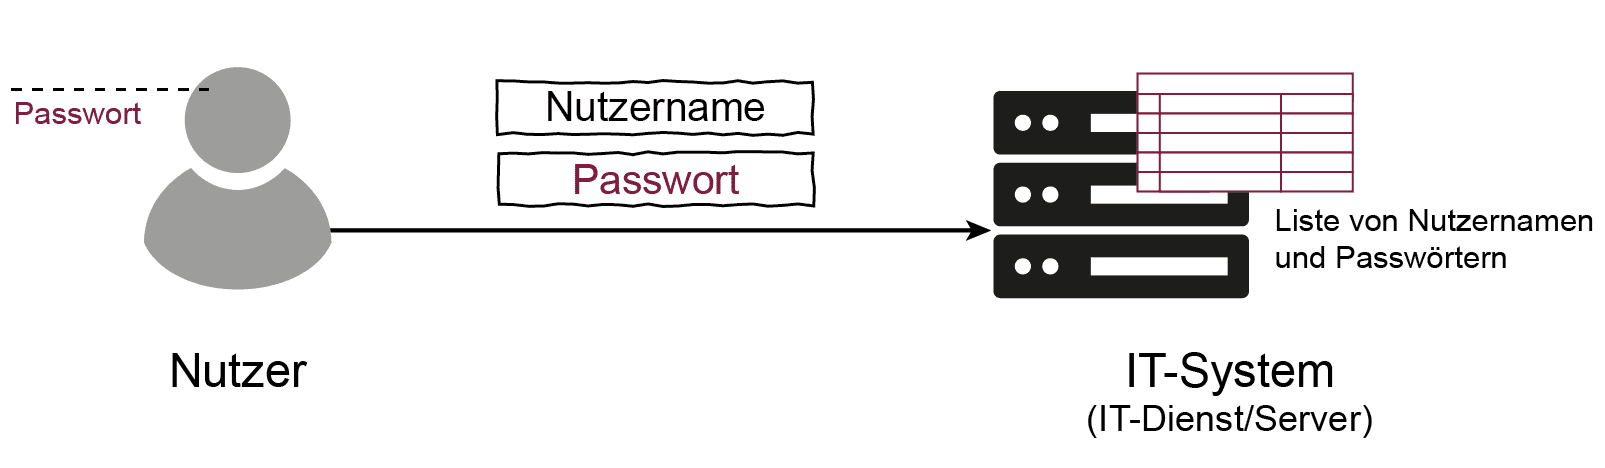 Passwörter / Passwort-Verfahren als Ablaufdiagramm